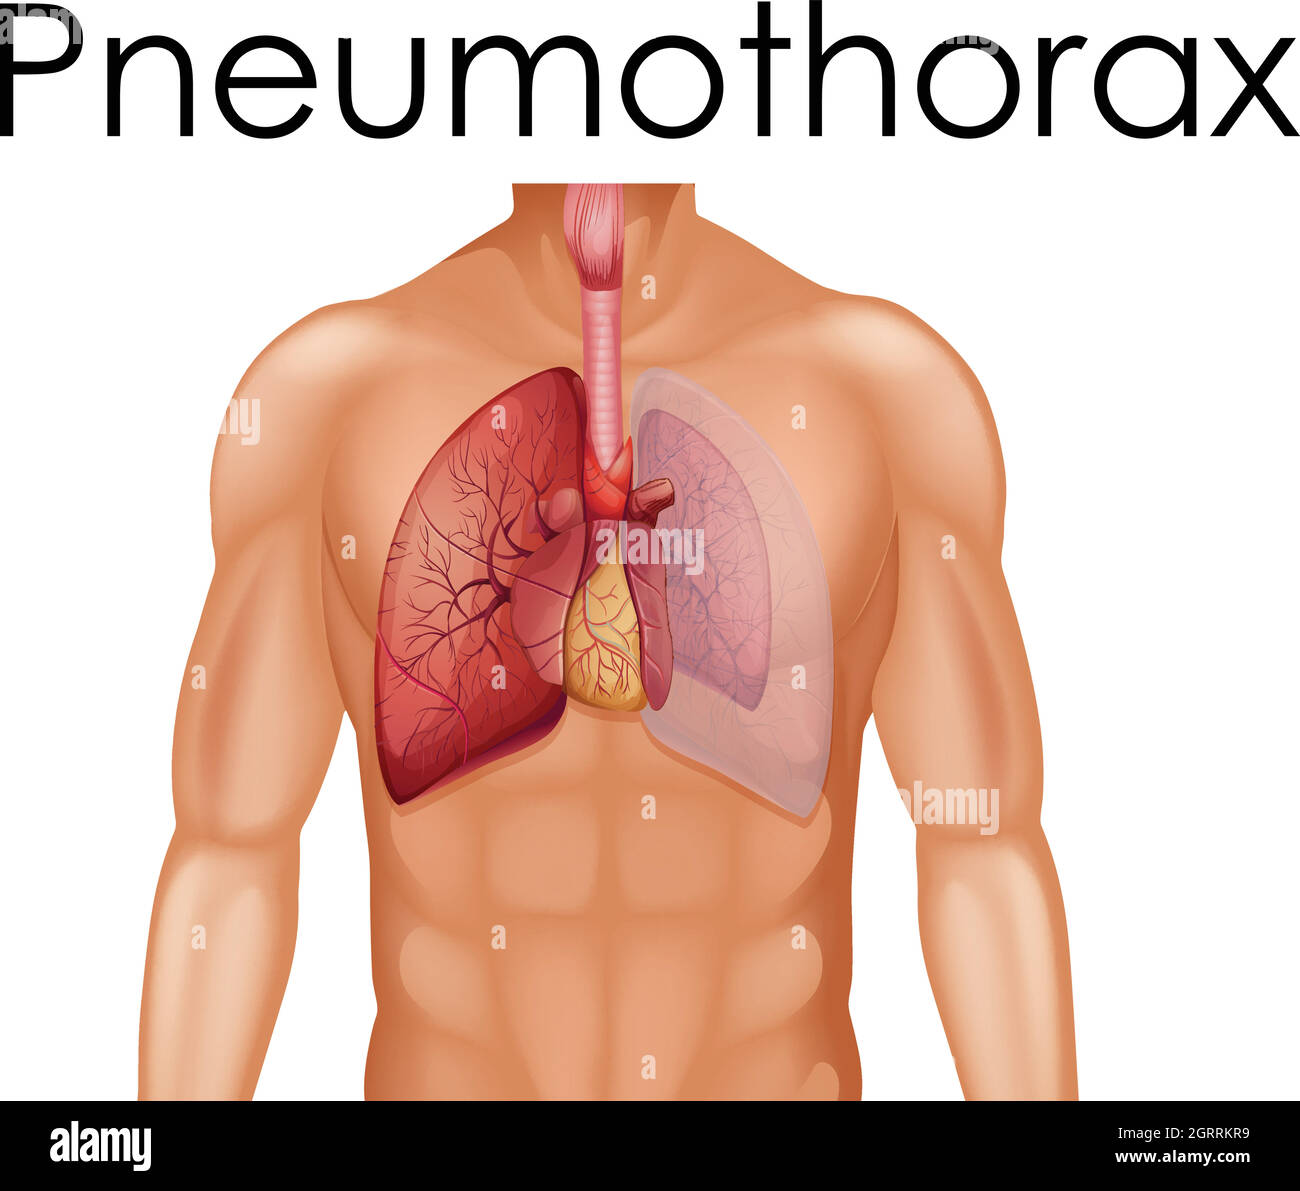 Anatomie humaine du pneumothorax Illustration de Vecteur